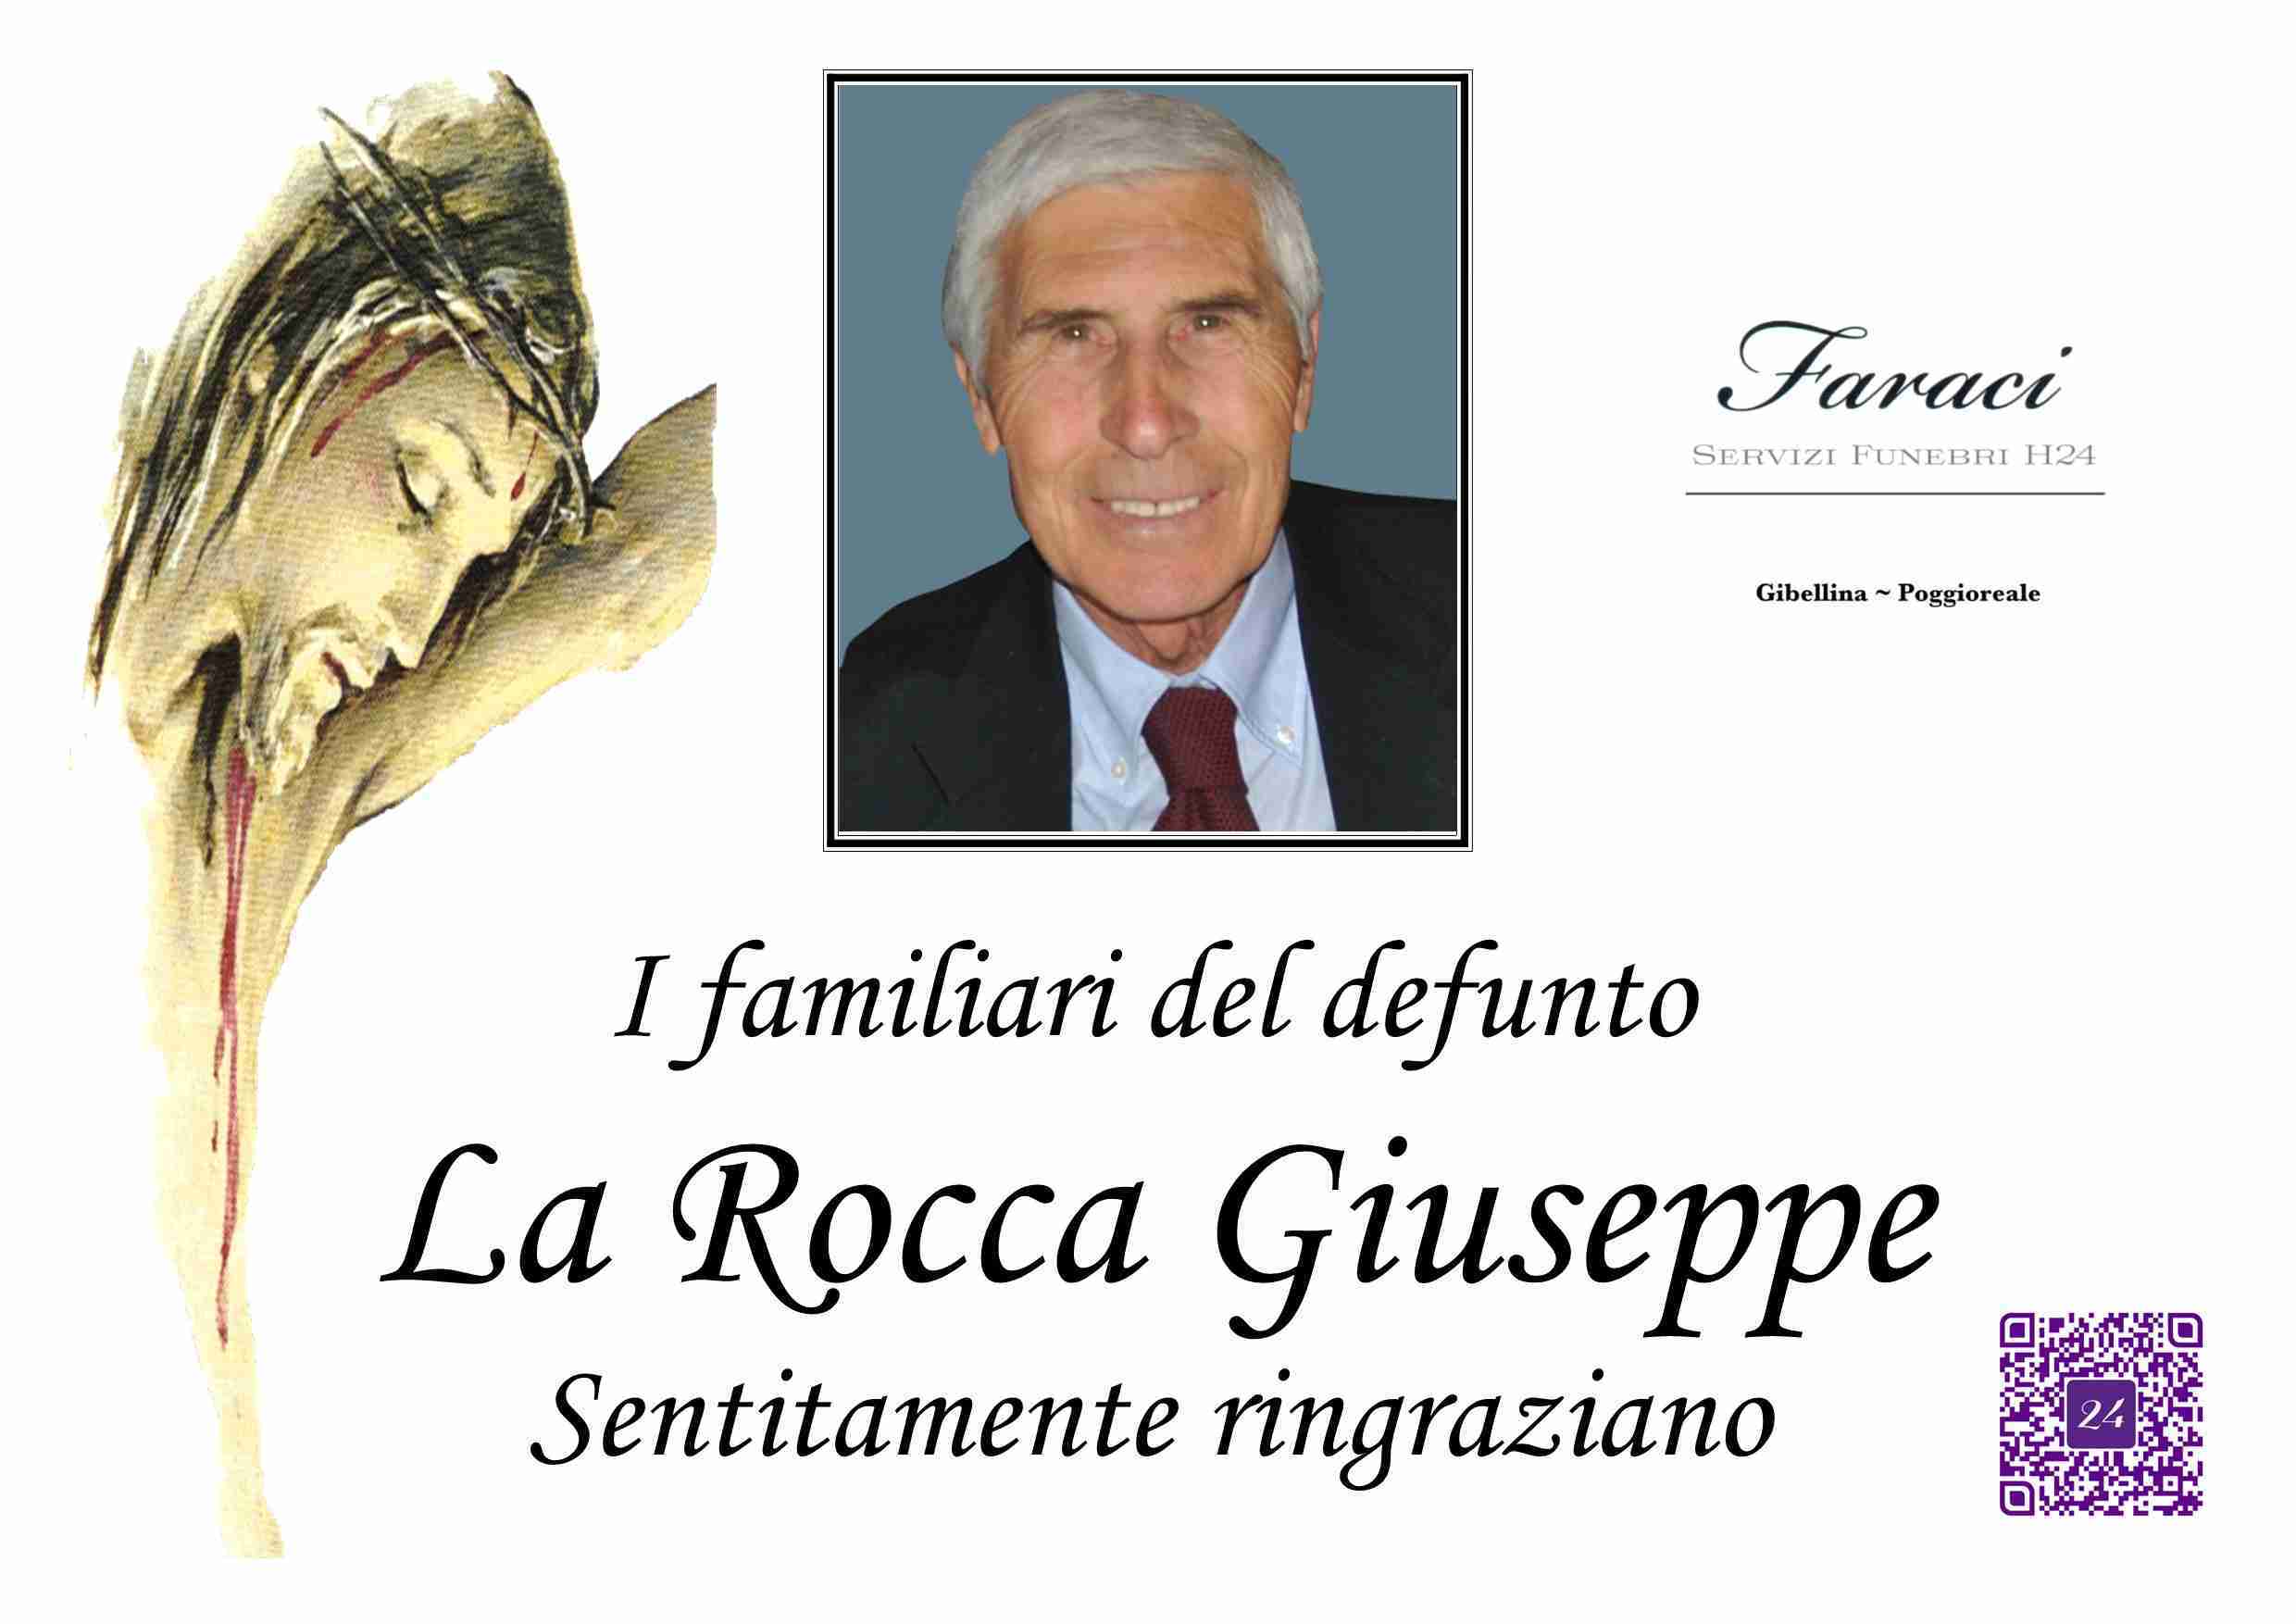 Giuseppe La Rocca